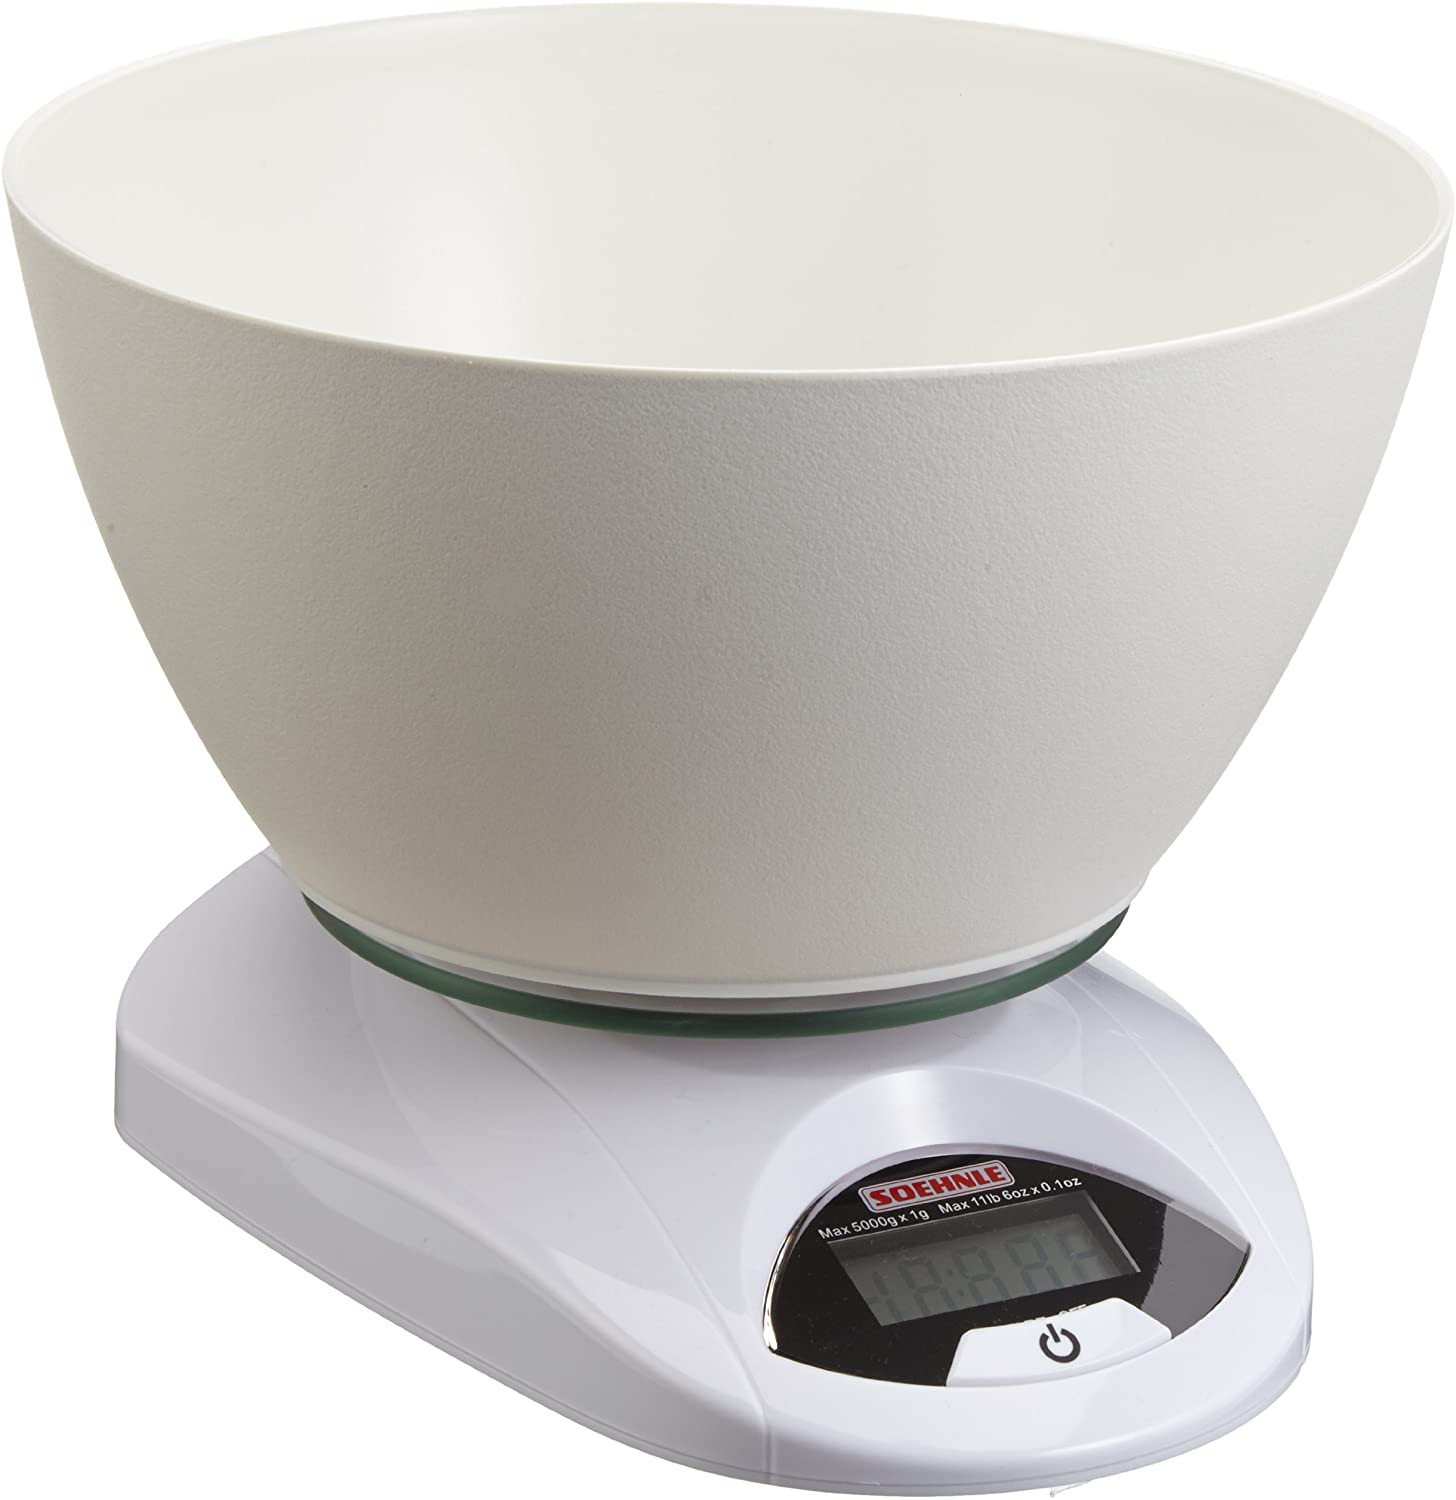 Balance de cuisine électronique Optiss 5kg/1g Blanc - TEFAL